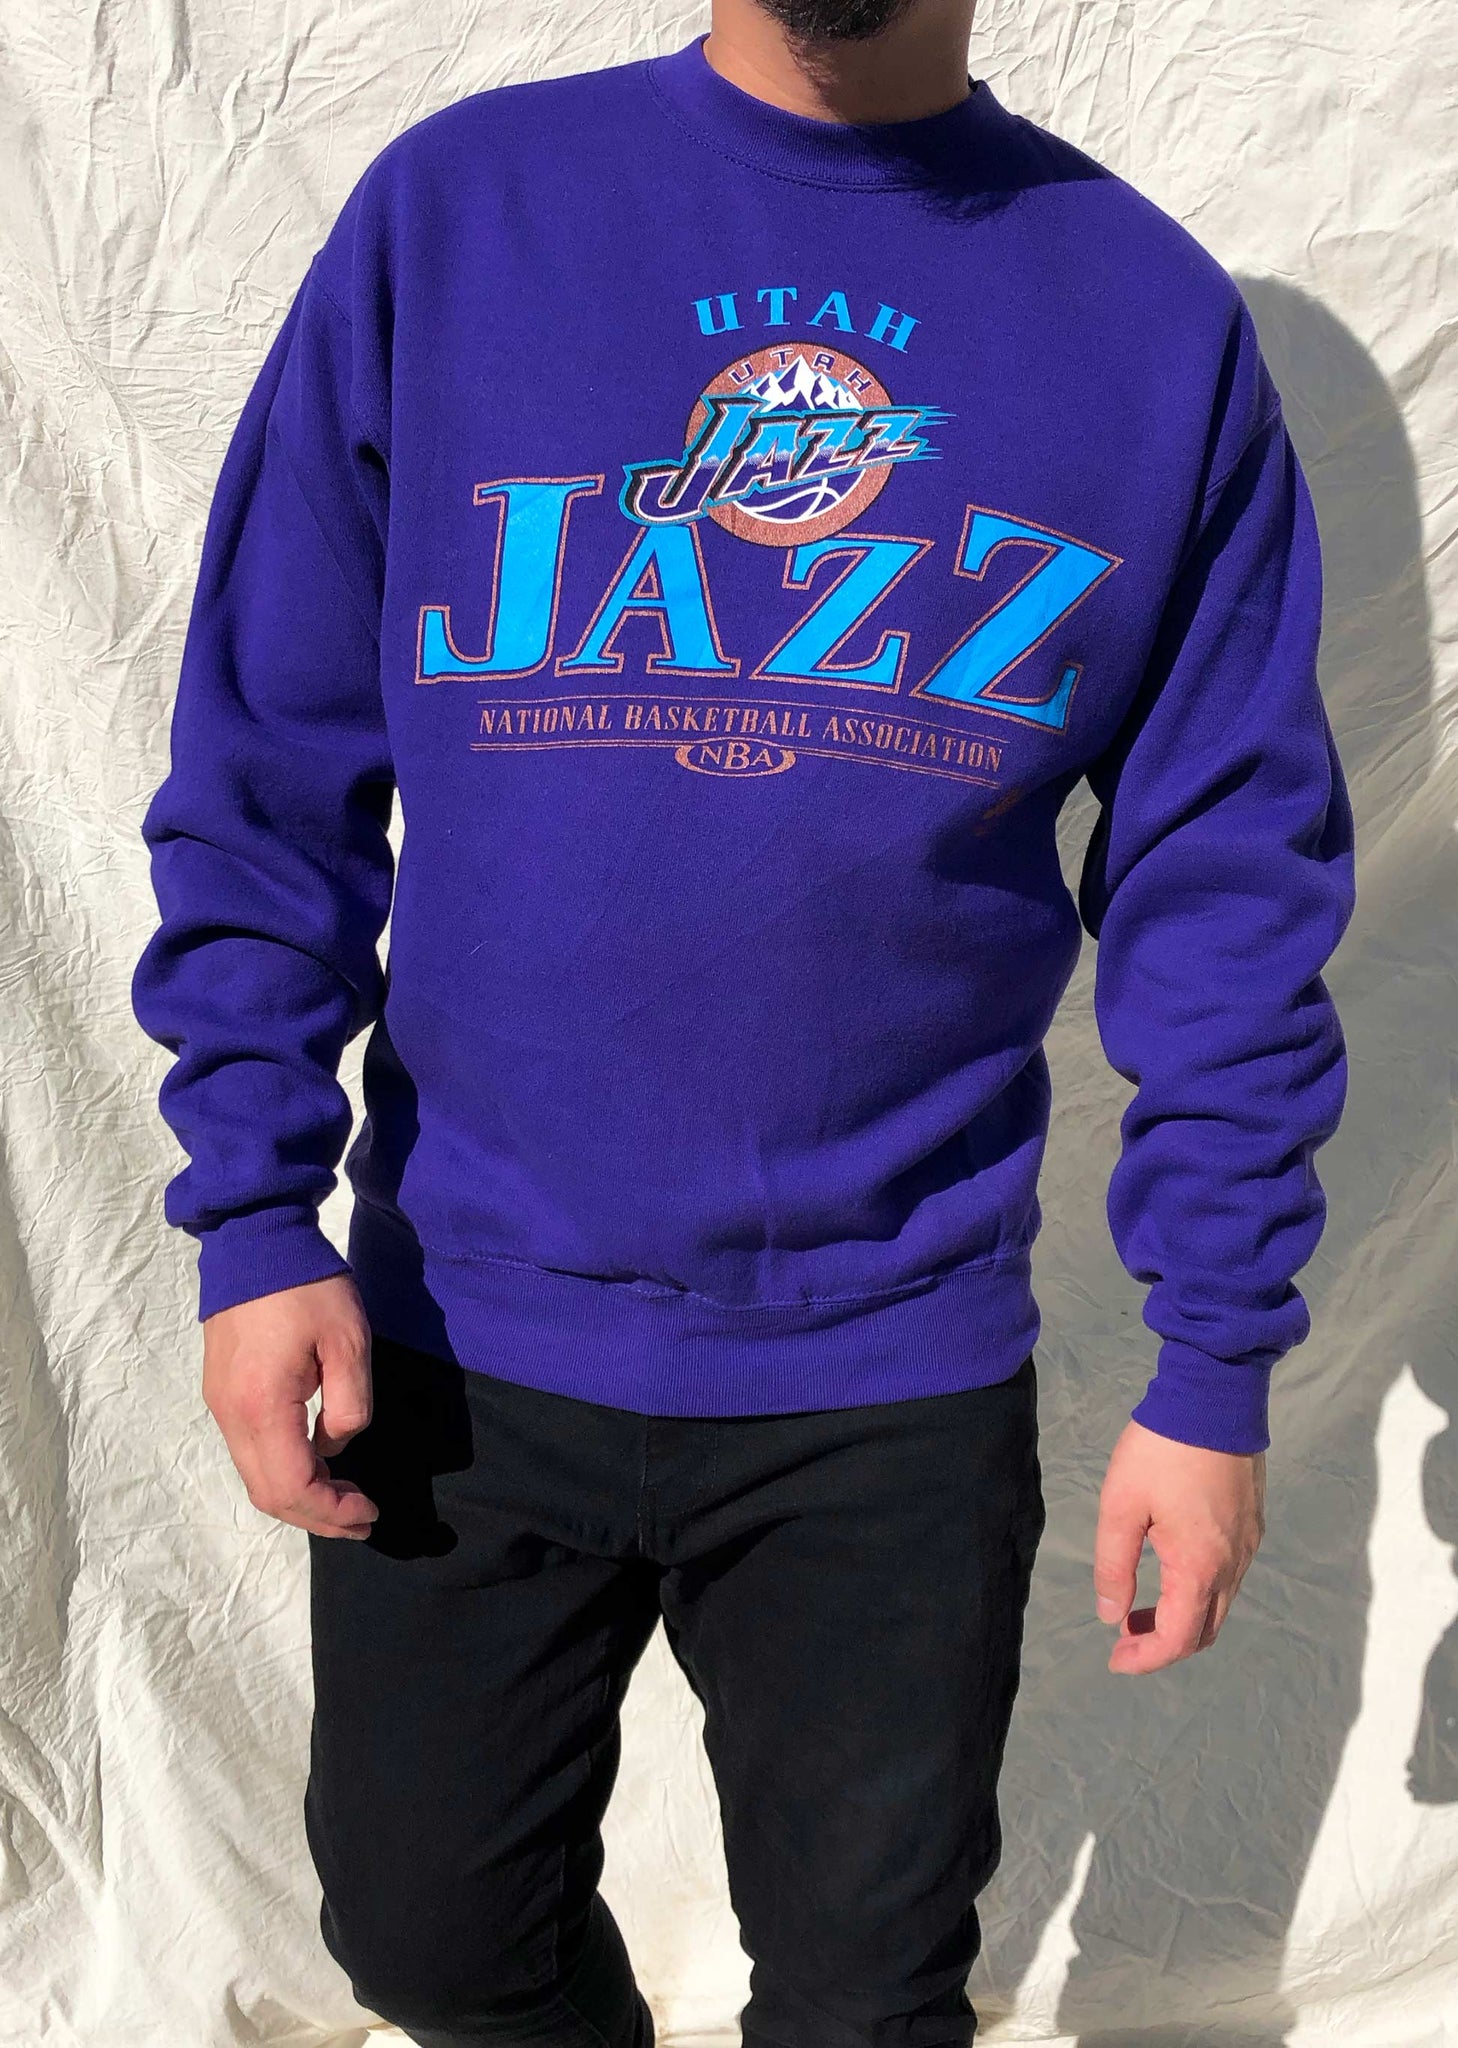 Vintage Utah Jazz Sweatshirt, Utah Basketball Hoodie, Vintag